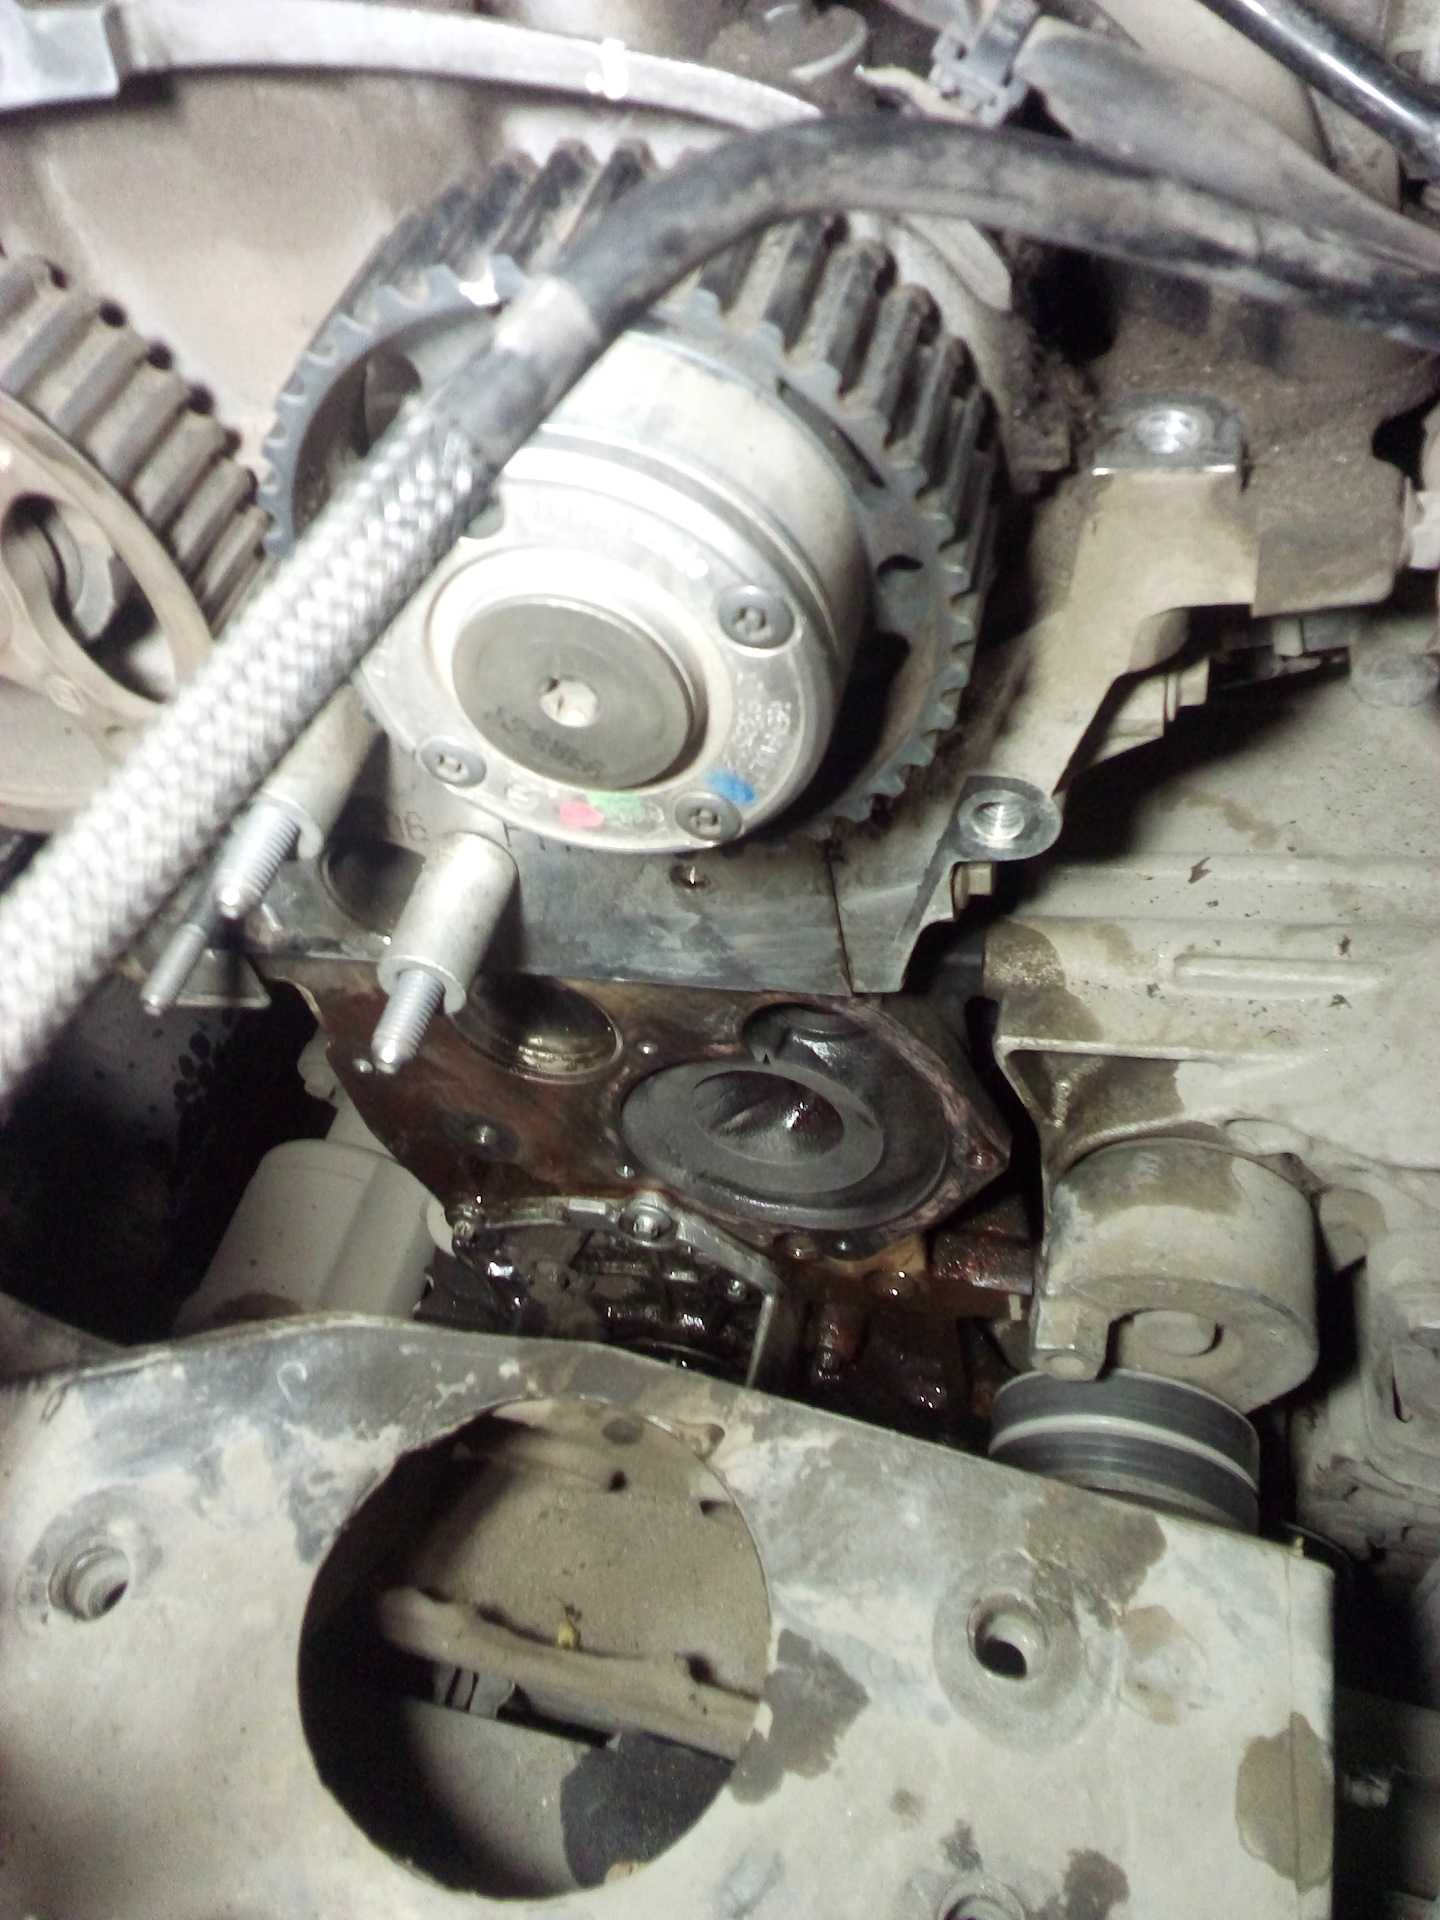 Замена грм дастер 2 0 - проверка состояния и замена ремня привода газораспределительного механизма на двигателе 2.0 литра renault duster - мой duster